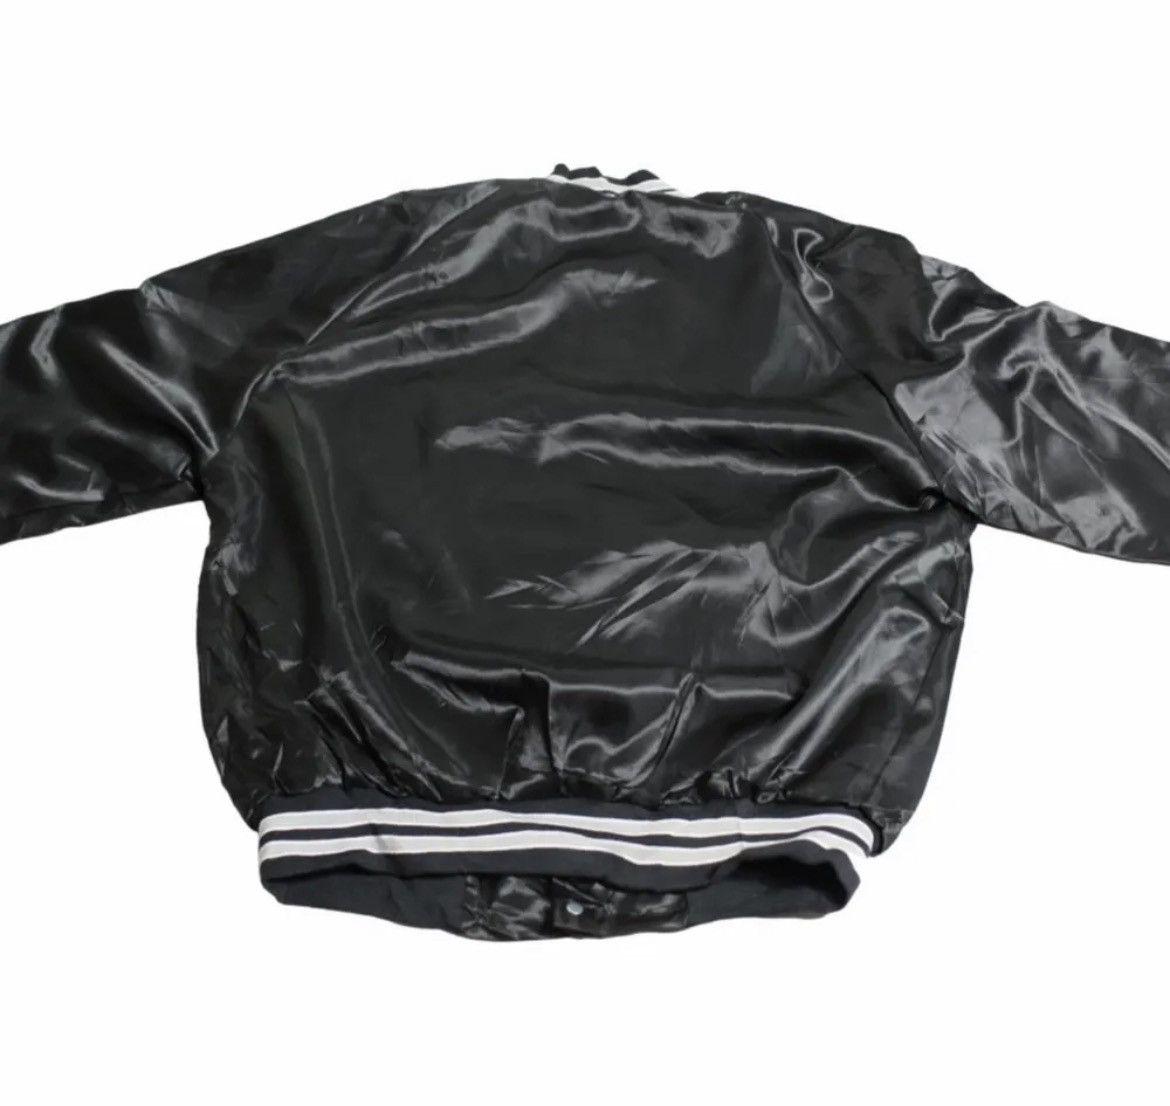 Vintage Black Varisty jacket Size US M / EU 48-50 / 2 - 3 Preview